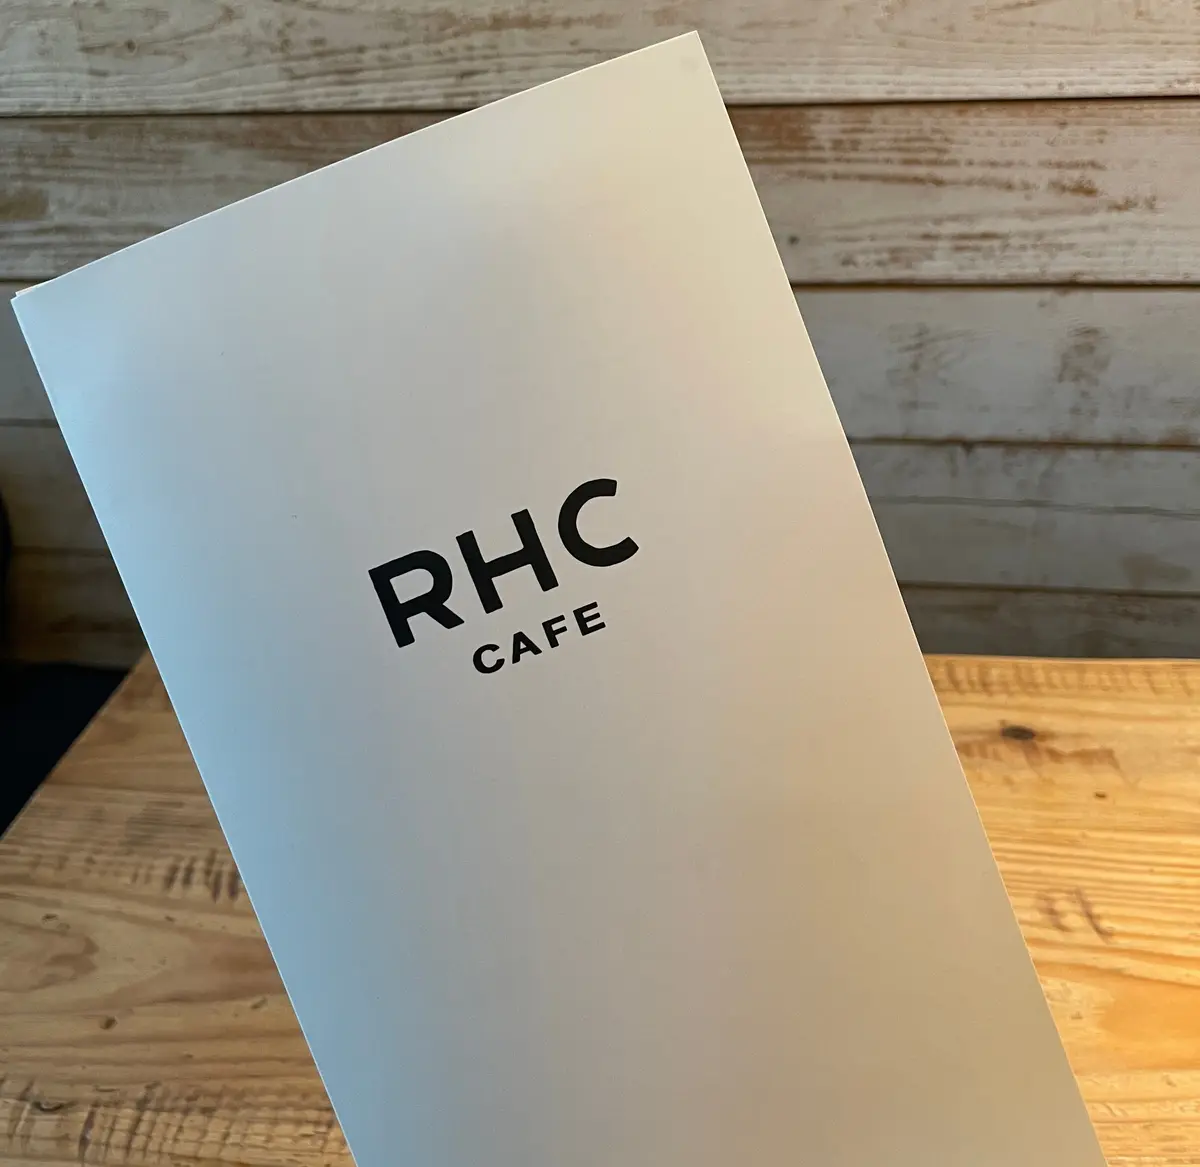 RHC CAFE